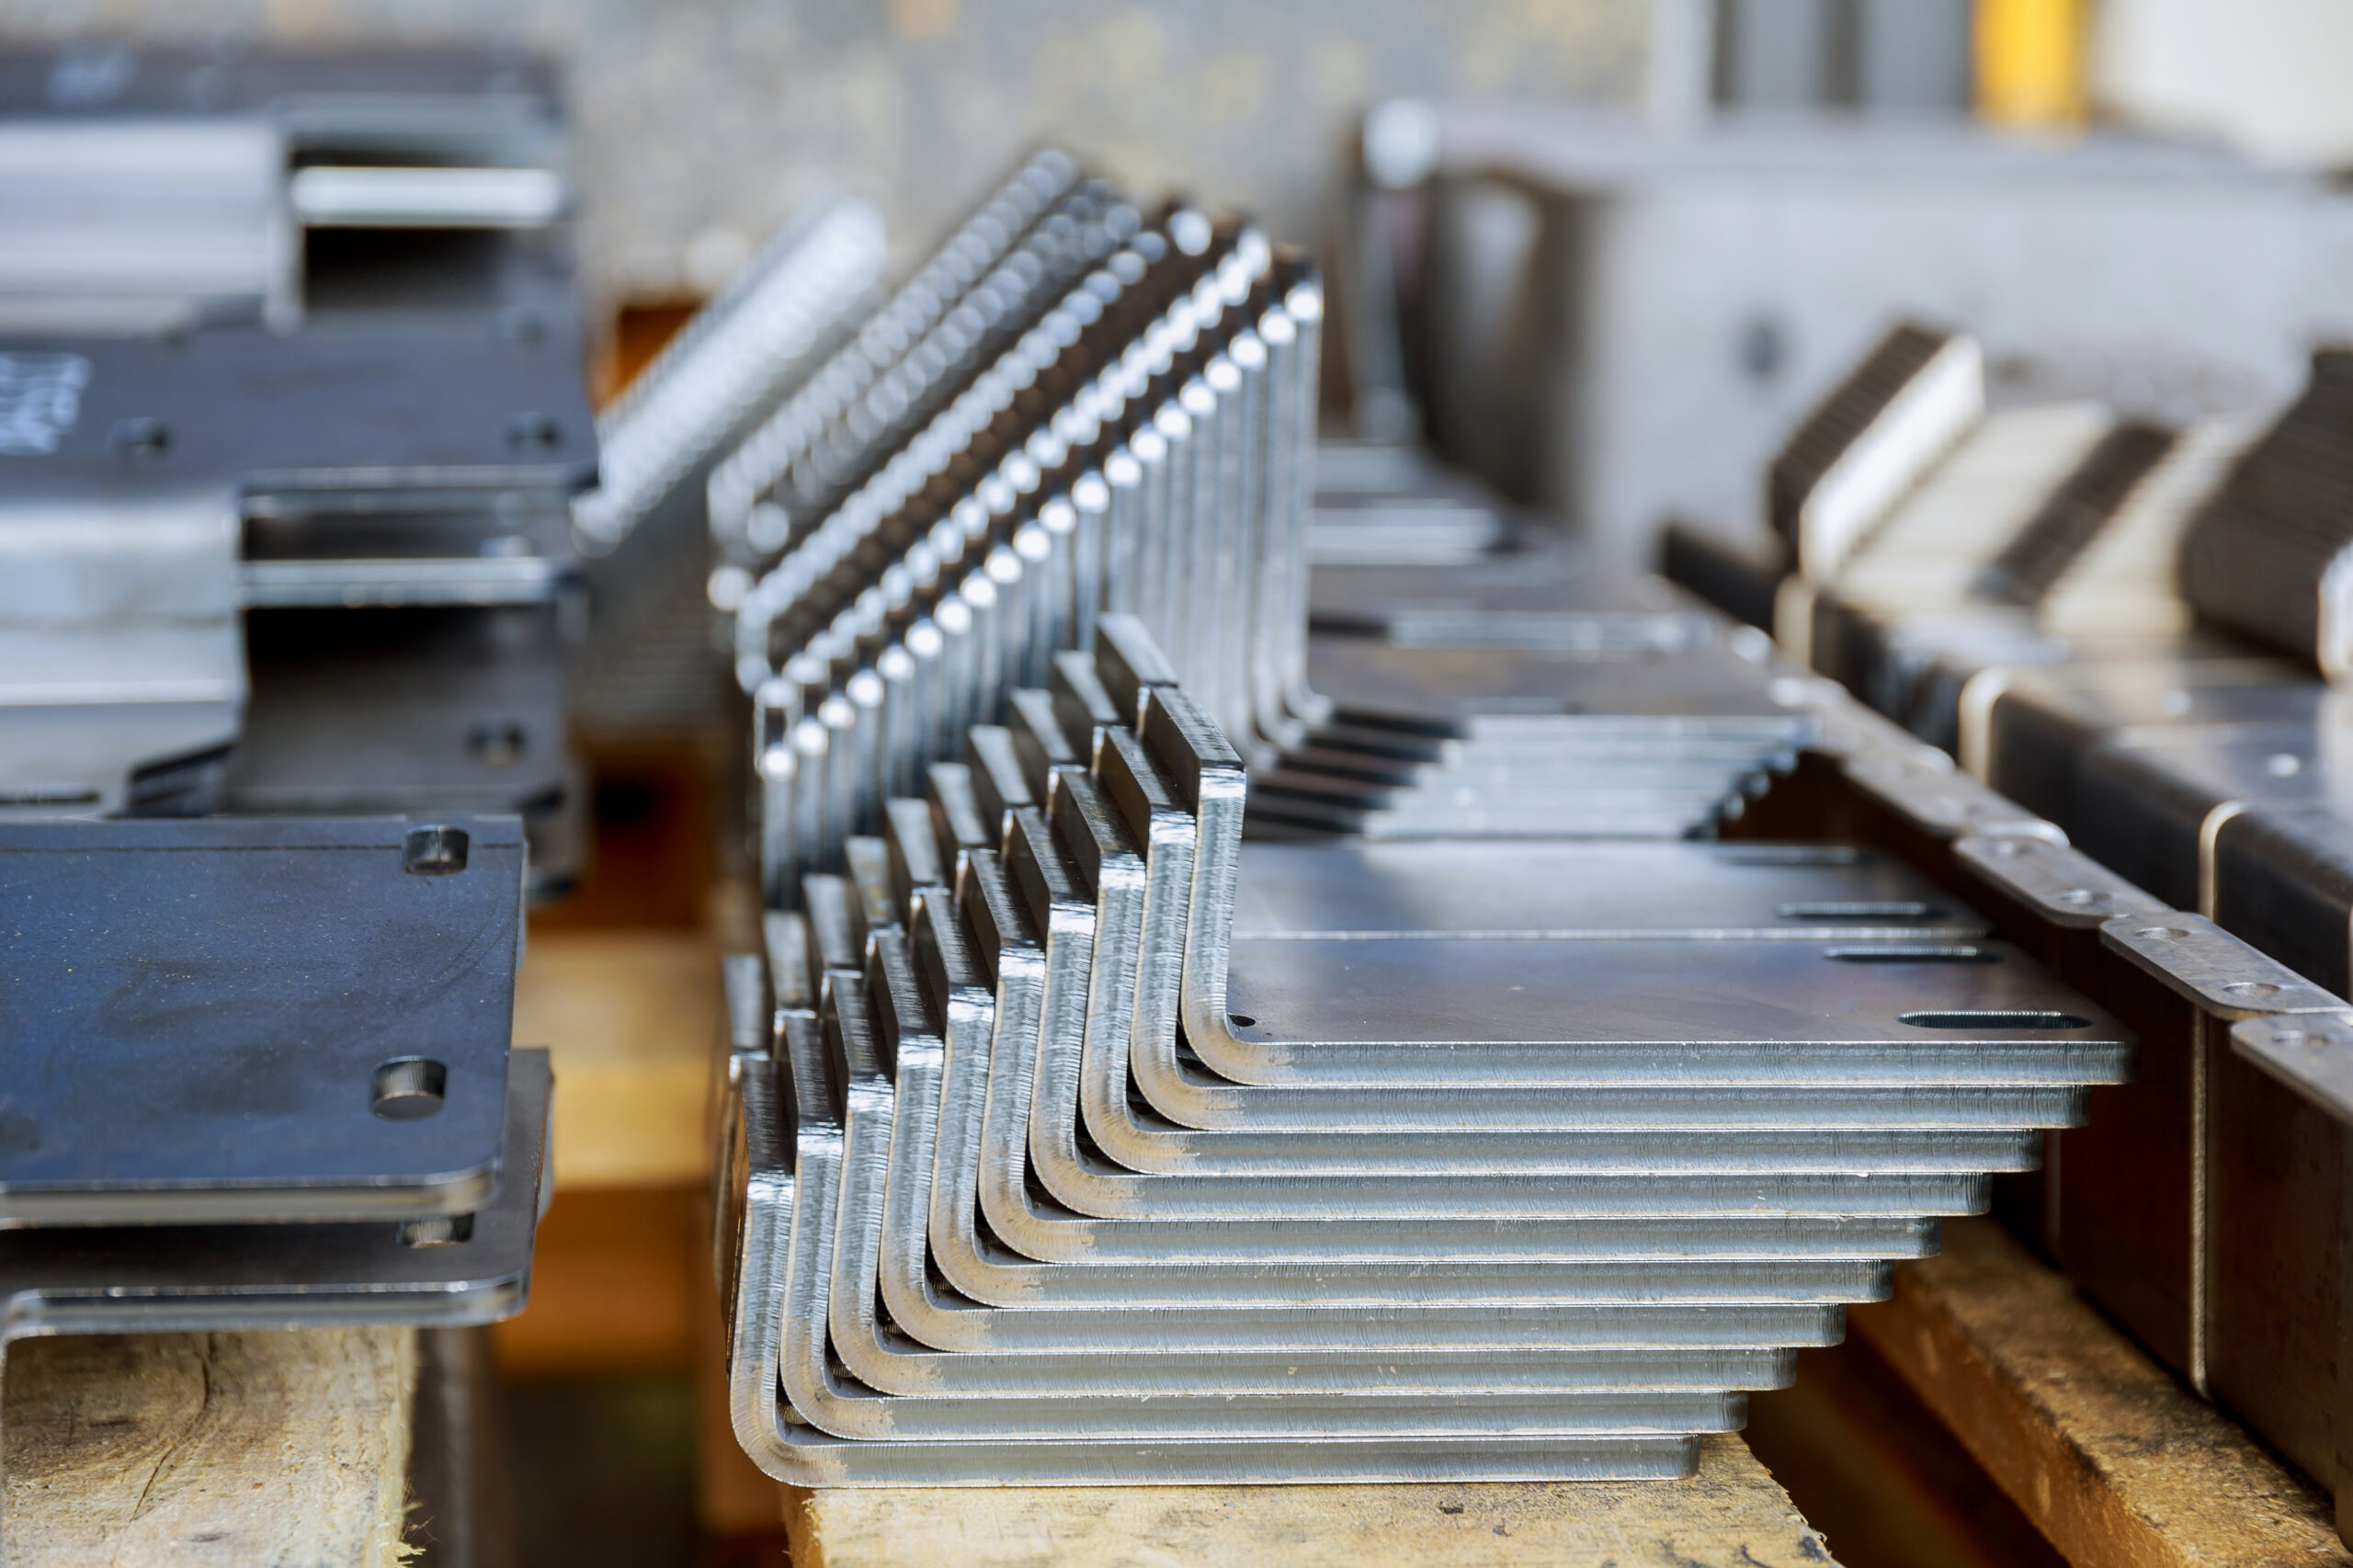 Lamiere piegate con precisione su un bancale: l'arte della carpenteria metallica si traduce in soluzioni su misura, dove forma e funzione si incontrano.